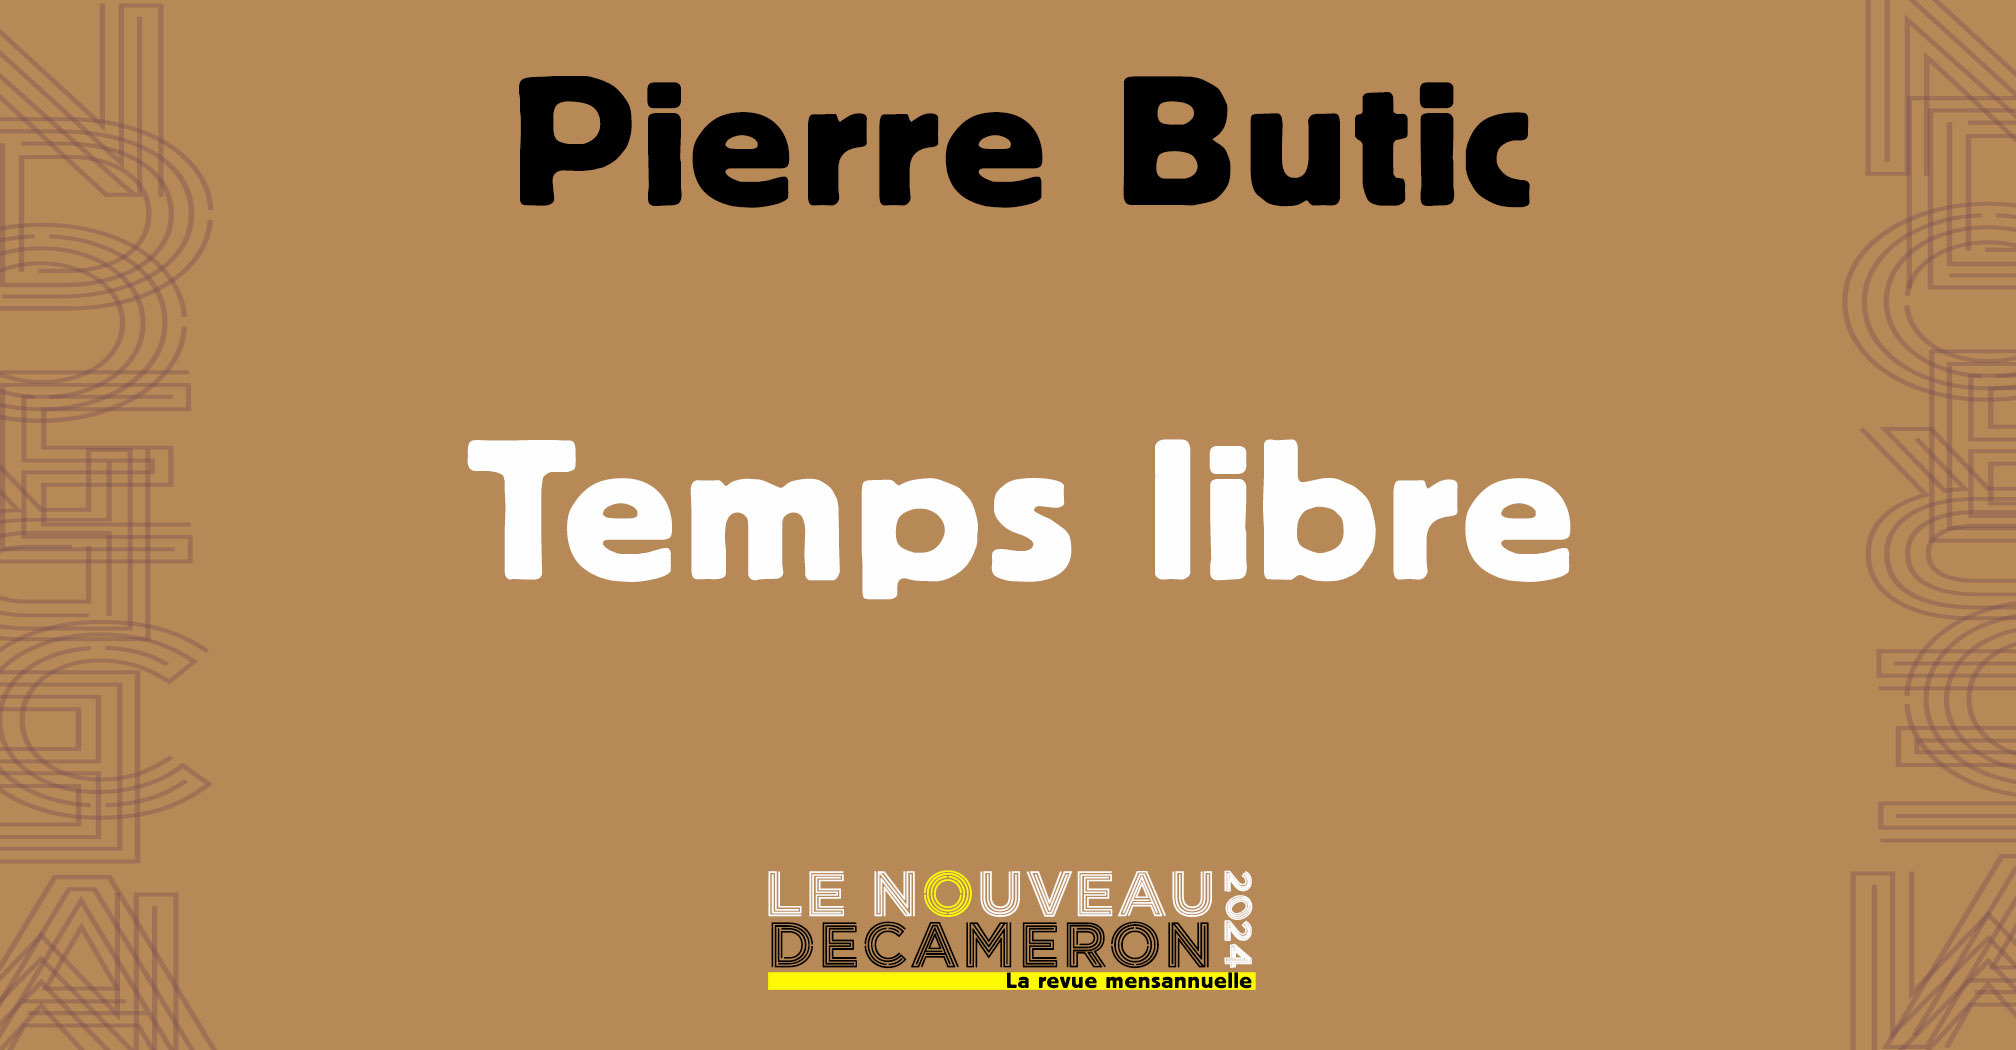 Pierre Butic - Temps libre